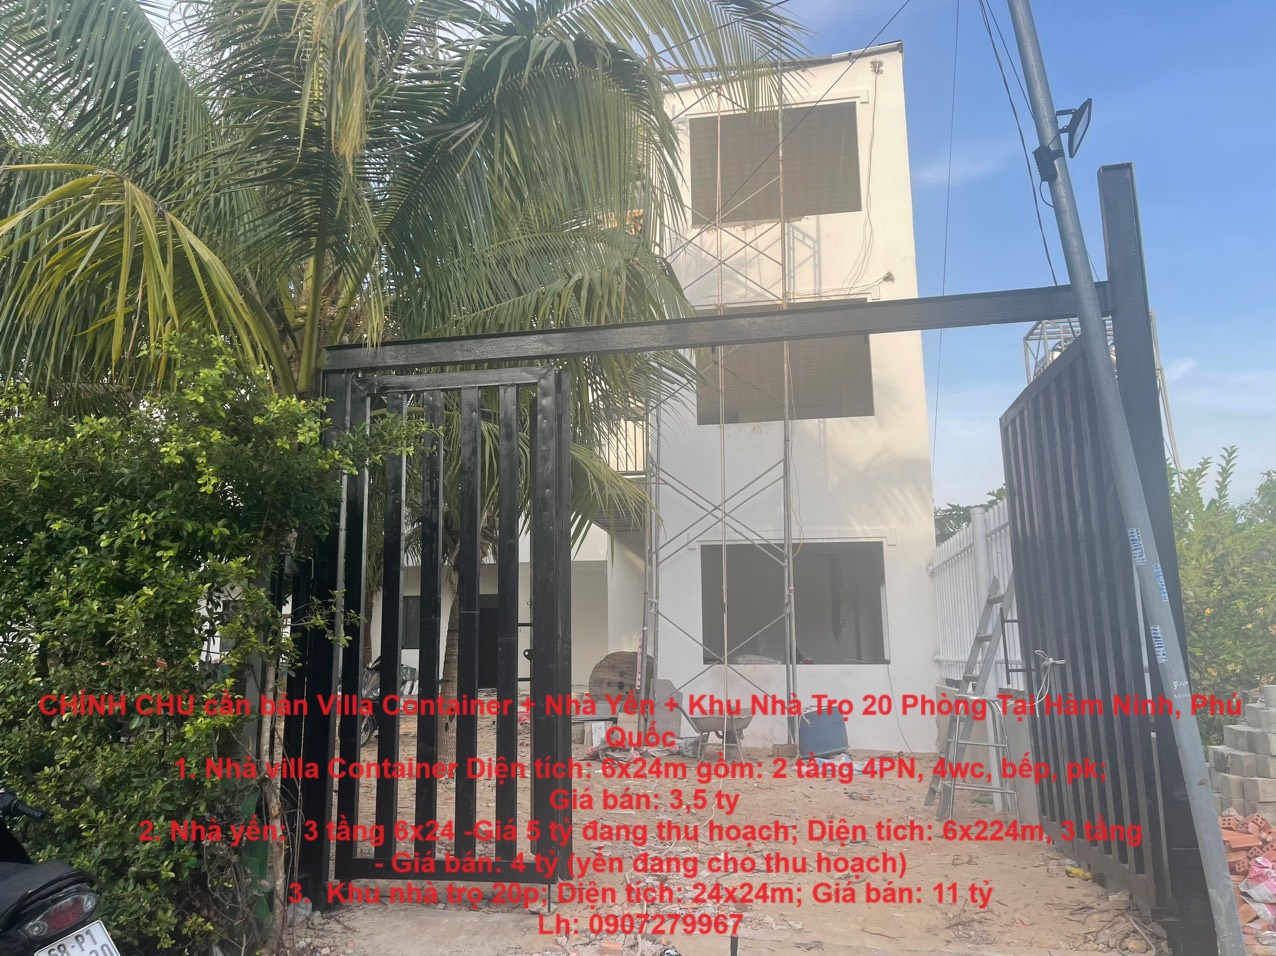 CHÍNH CHỦ cần bán Villa Container + Nhà Yến + Khu Nhà Trọ 20 Phòng Tại Hàm Ninh, Phú Quốc - Ảnh chính